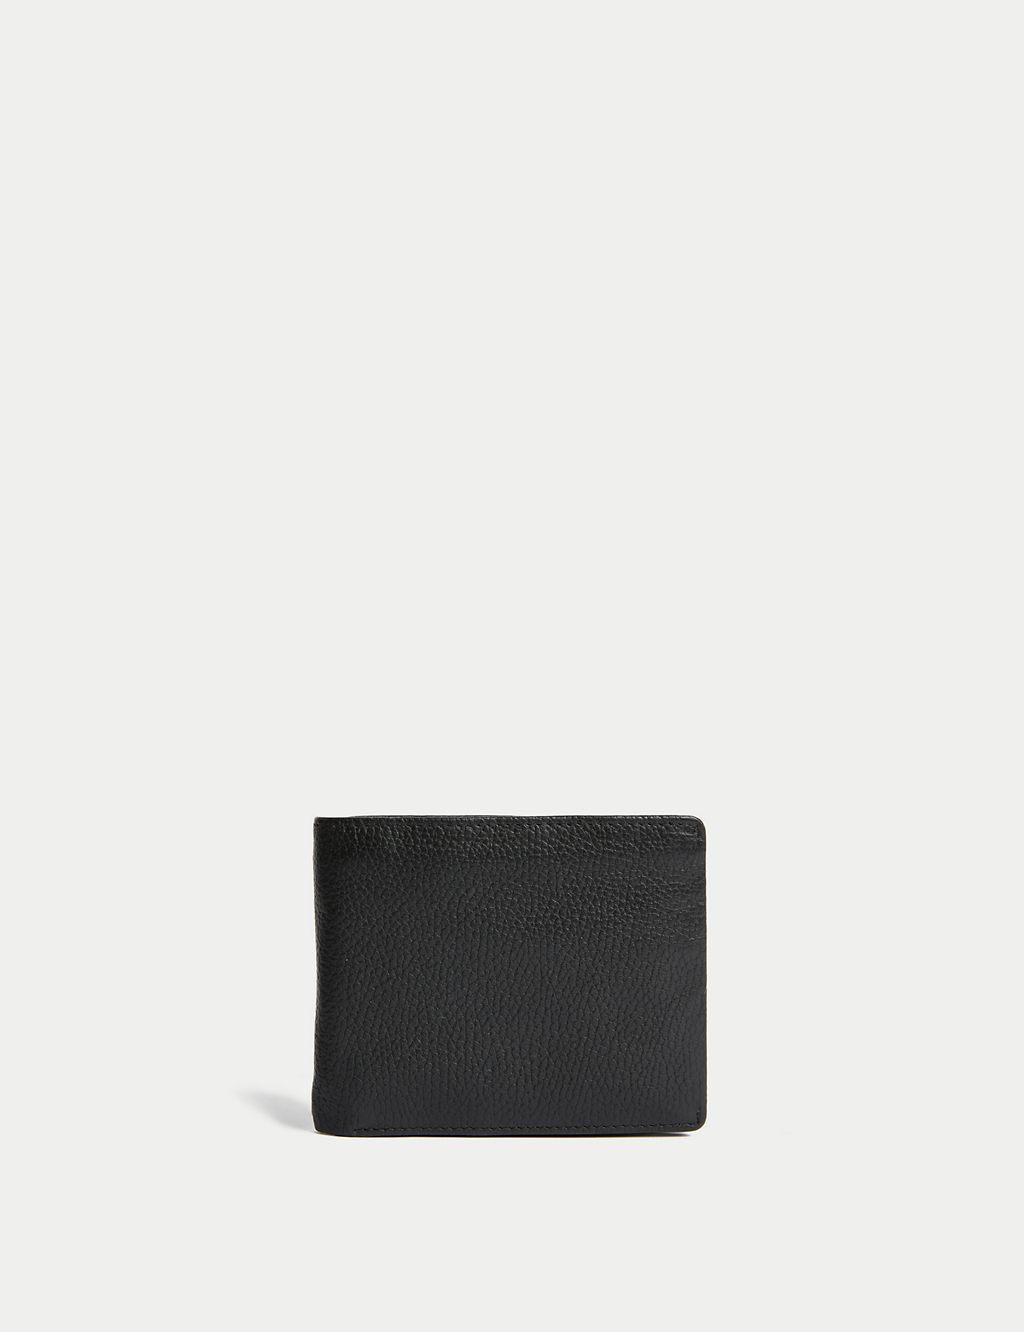 Leather Cardsafe™ Wallet 3 of 4